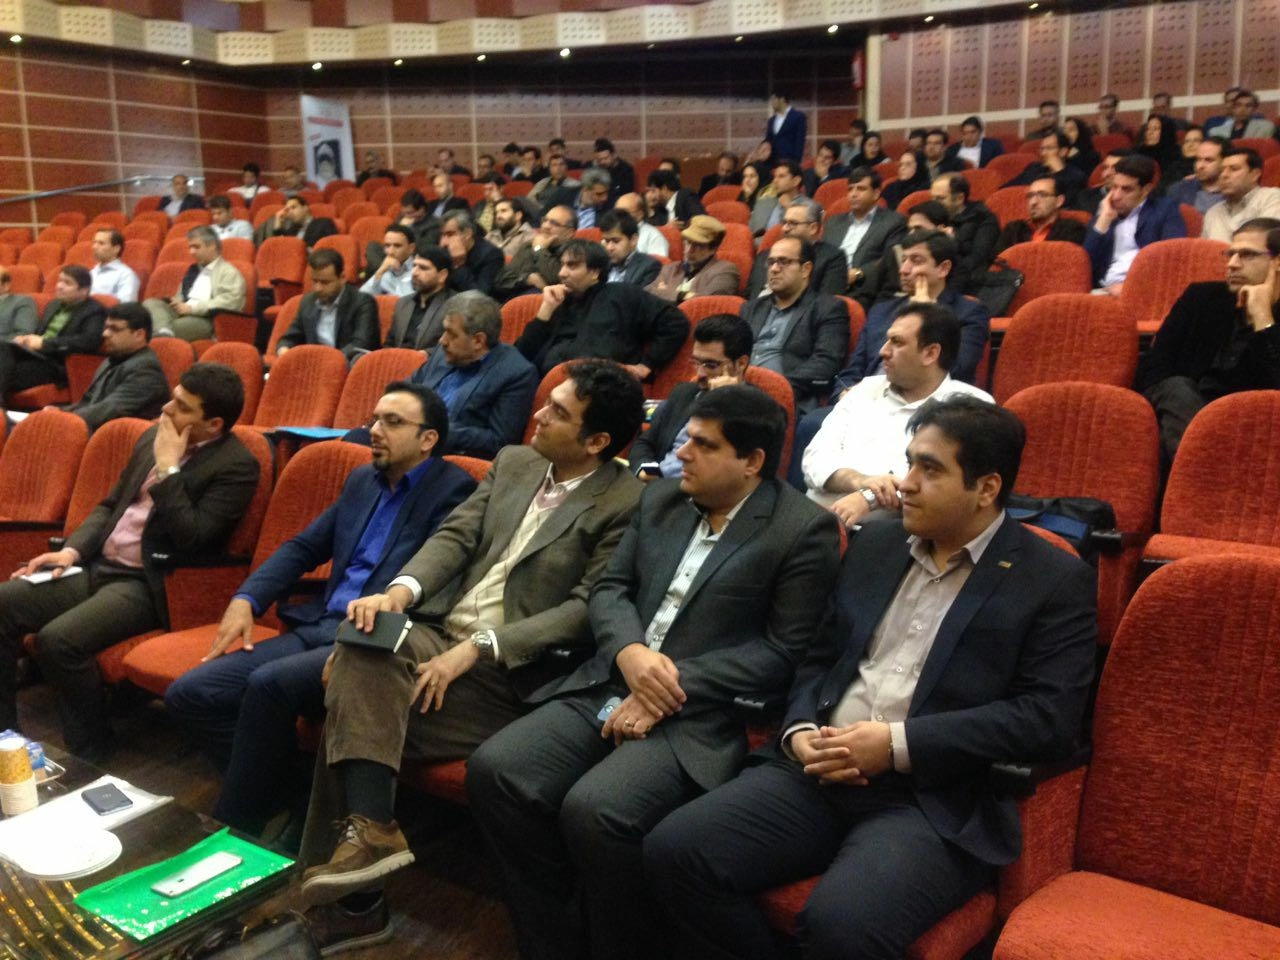 همایش پدافند سایبری در شهر اراک برگزار شد